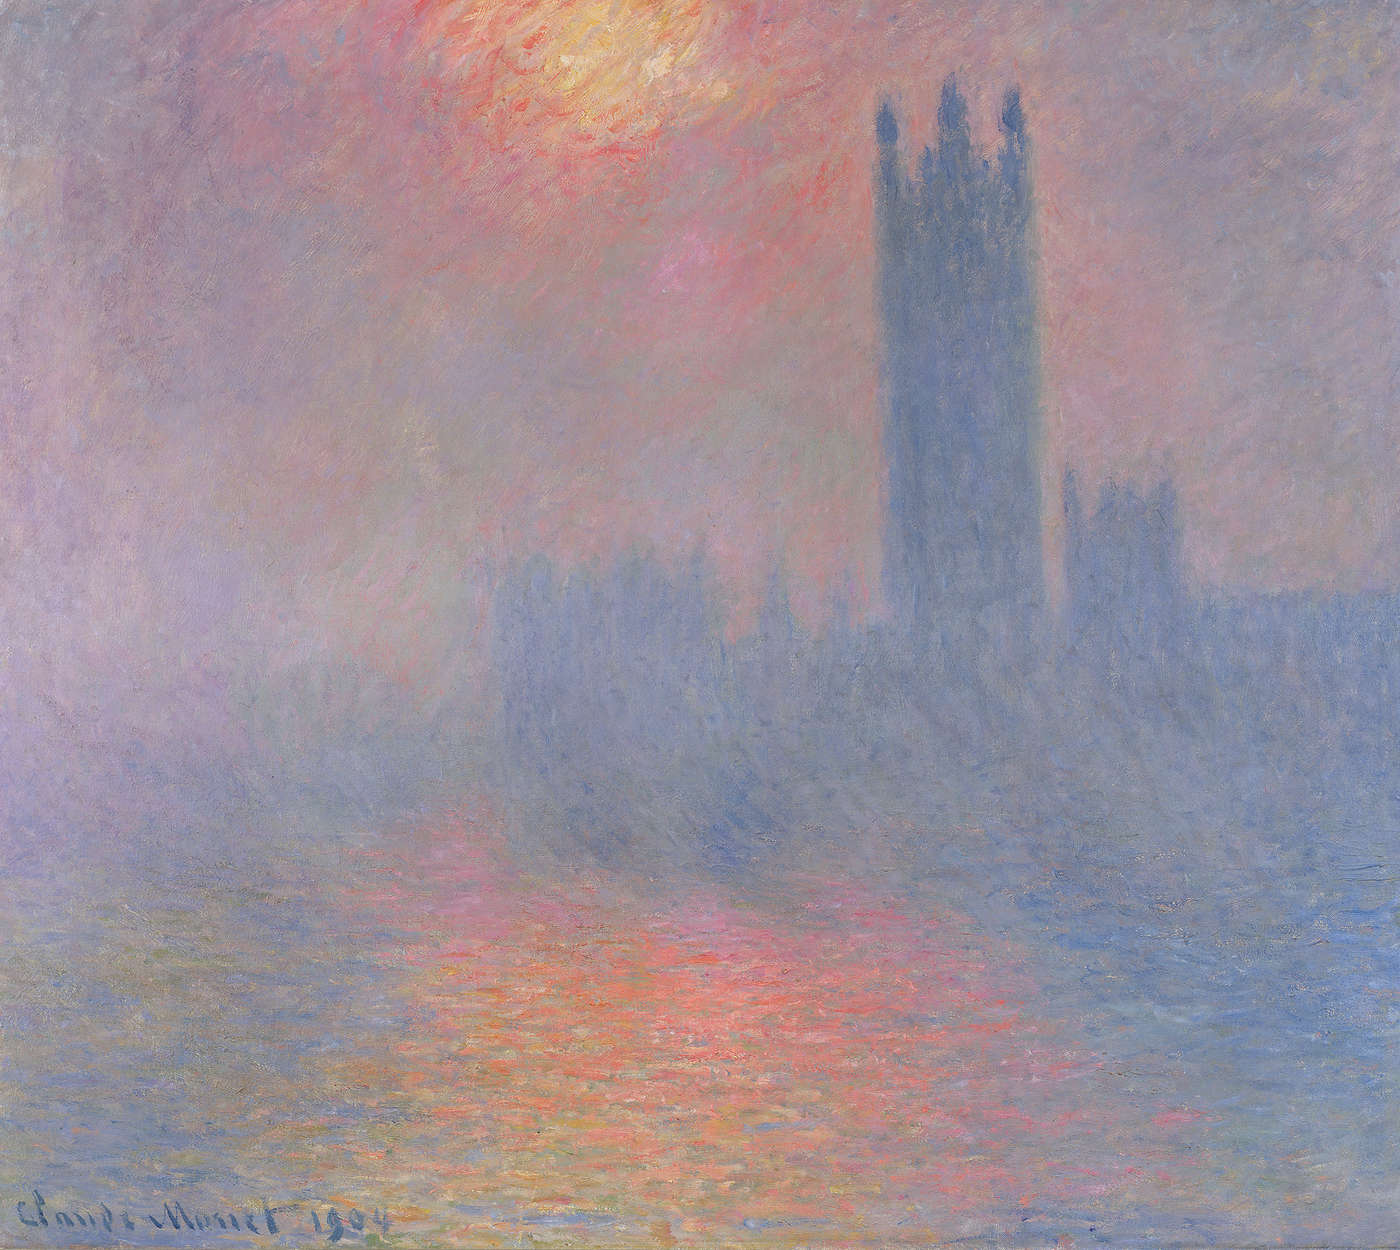             Mural "El Parlamento de Londres con el sol atravesando la niebla" de Claude Monet
        